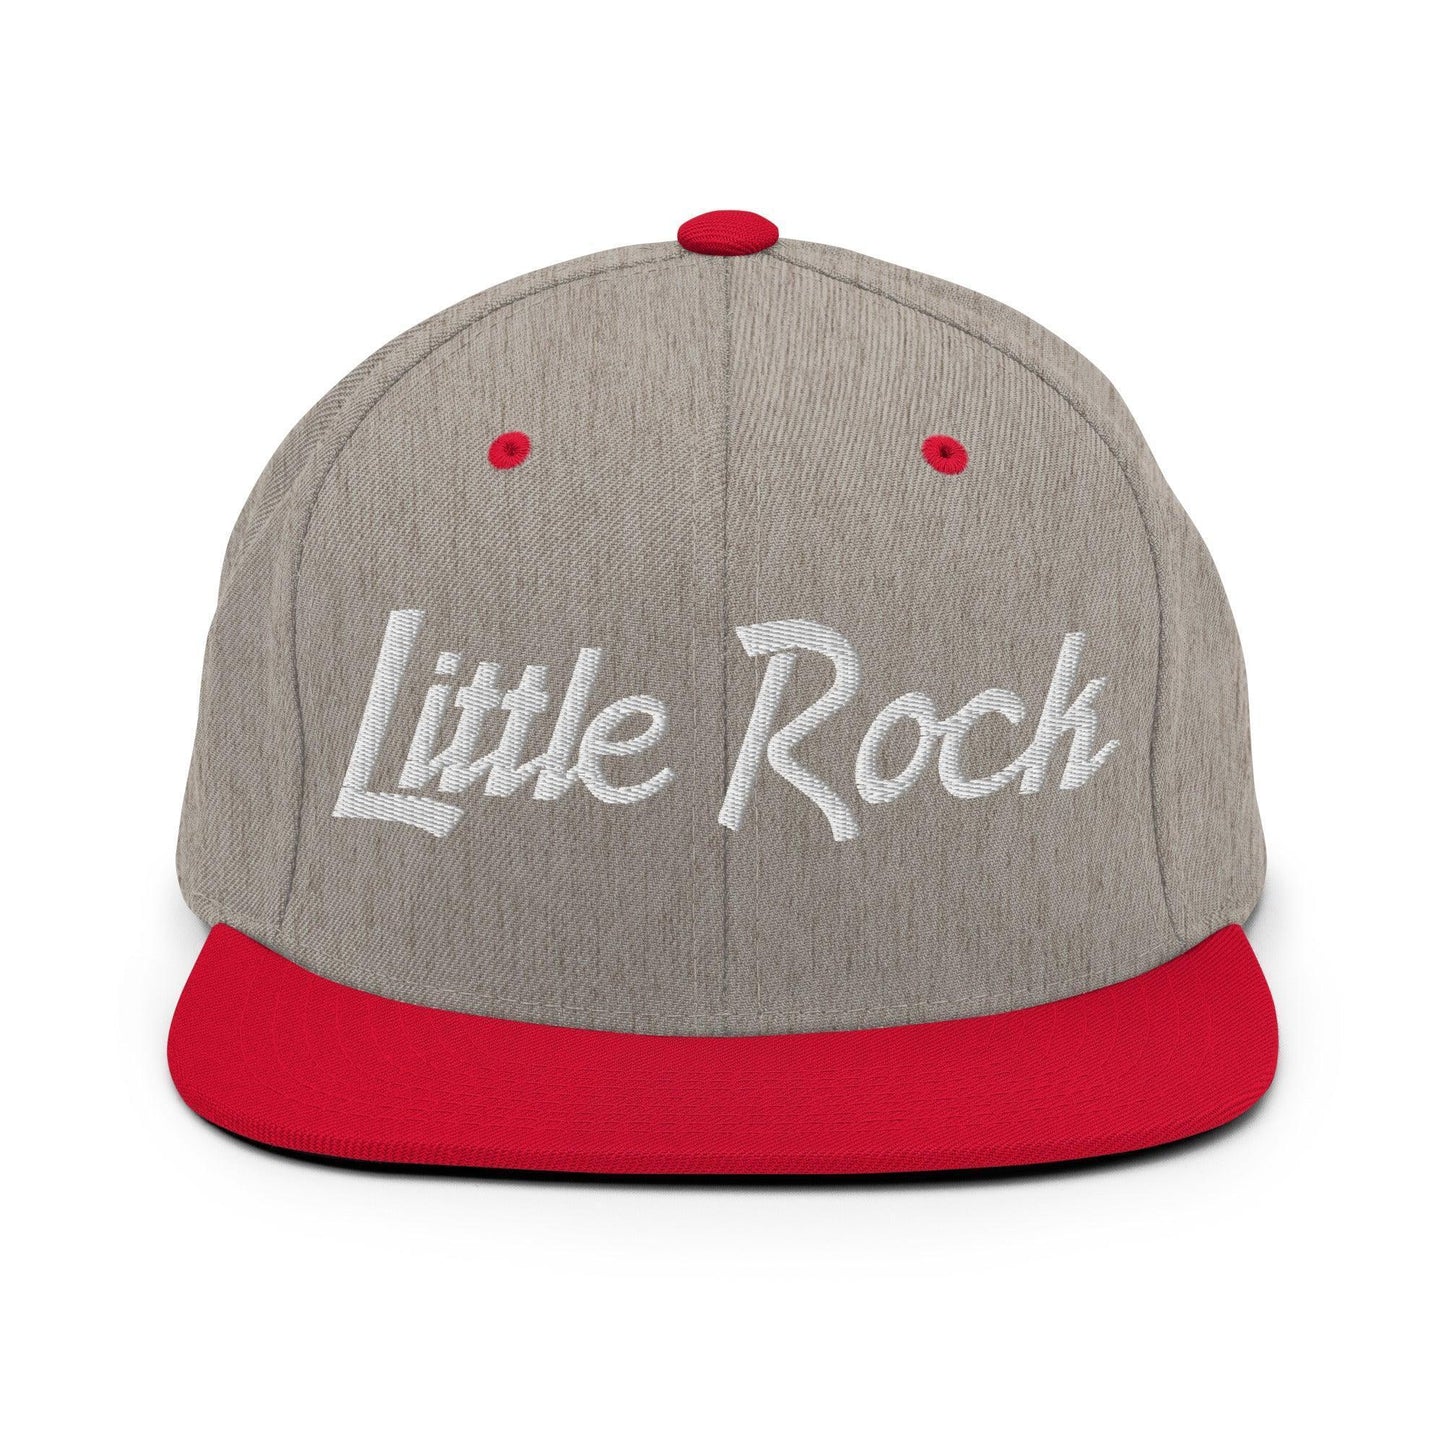 Little Rock Script Snapback Hat Heather Grey Red